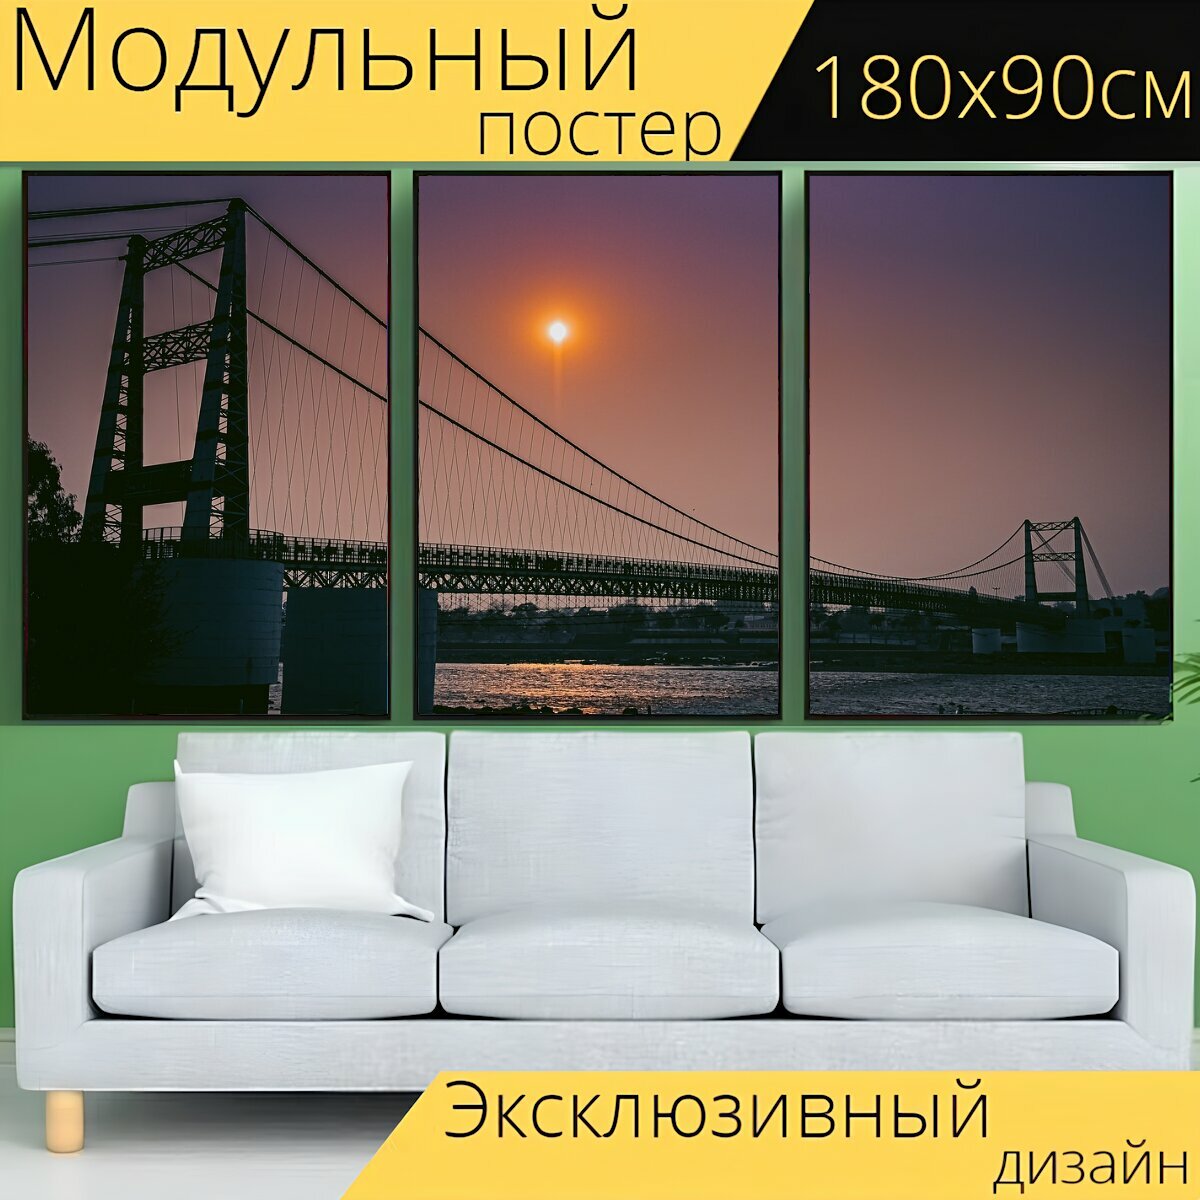 Модульный постер "Мост, солнце, природа" 180 x 90 см. для интерьера